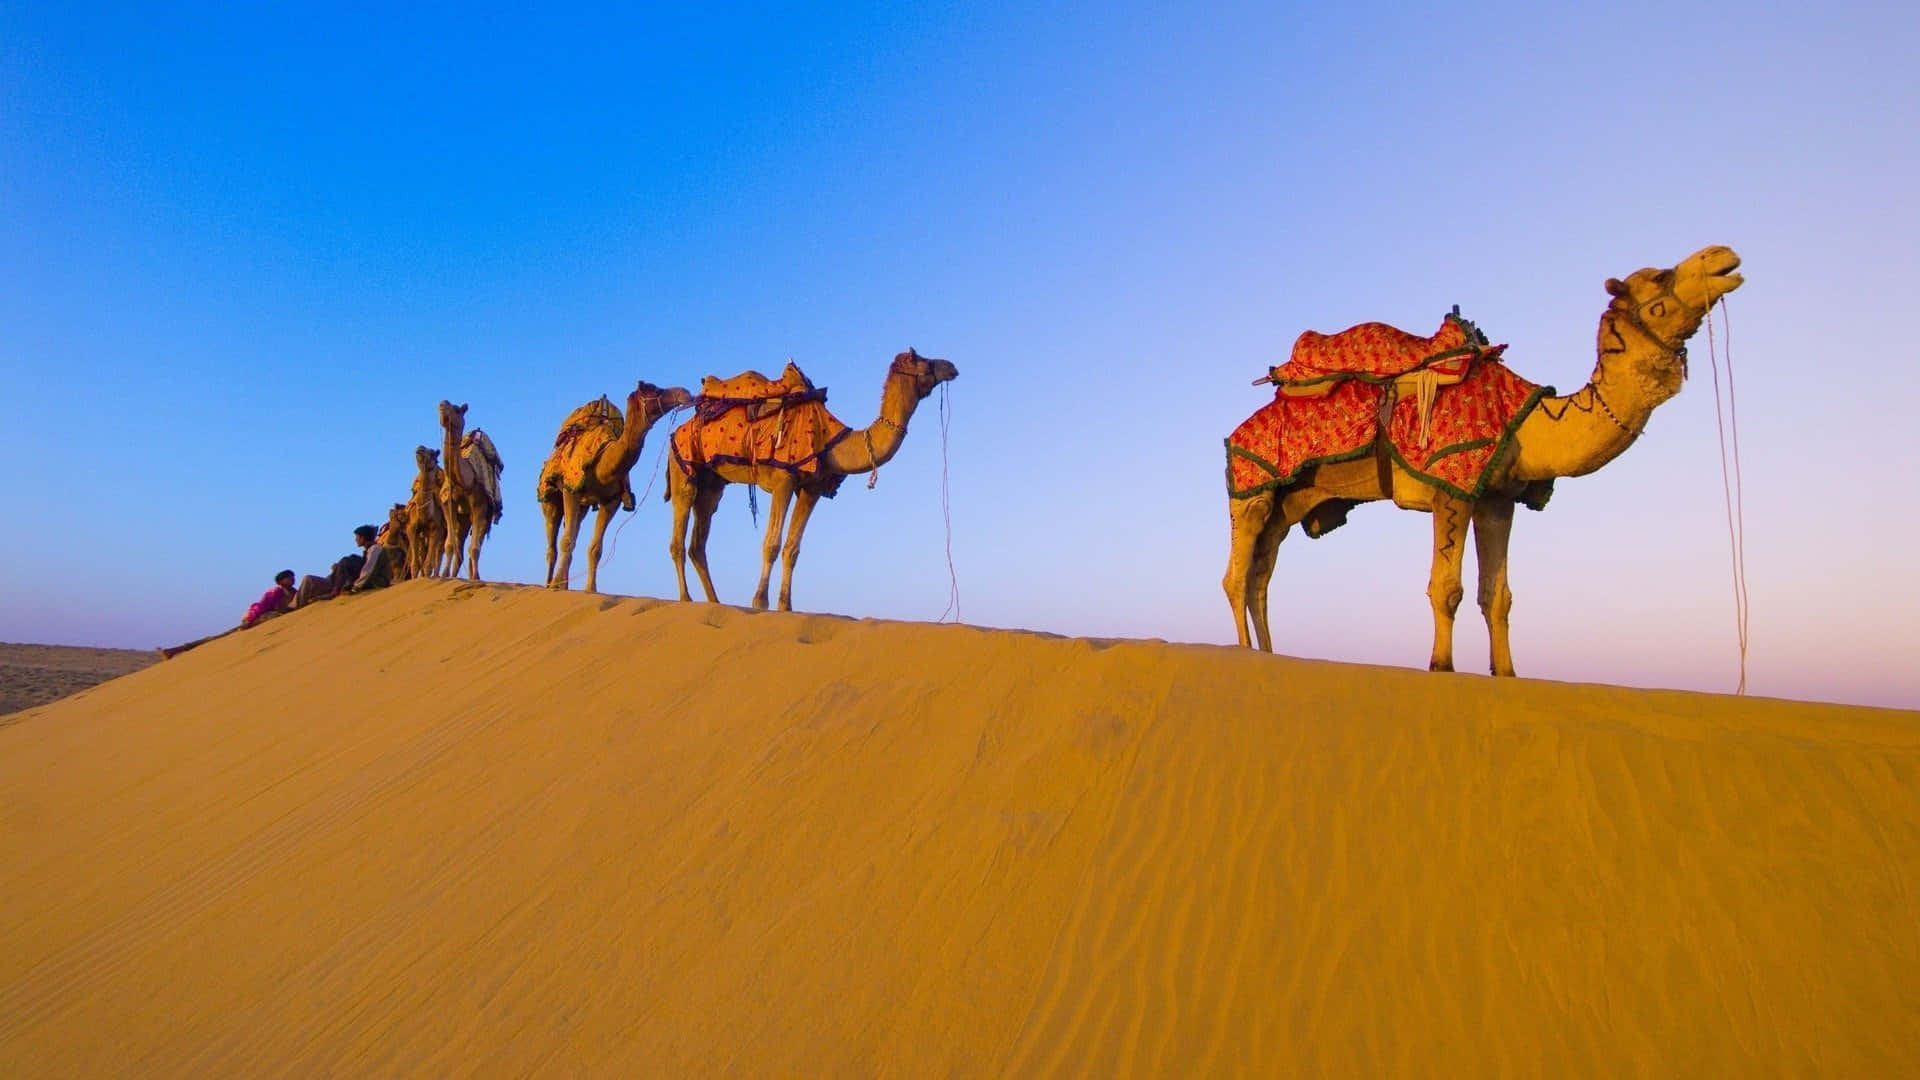 "Camel Walking Across the Desert"